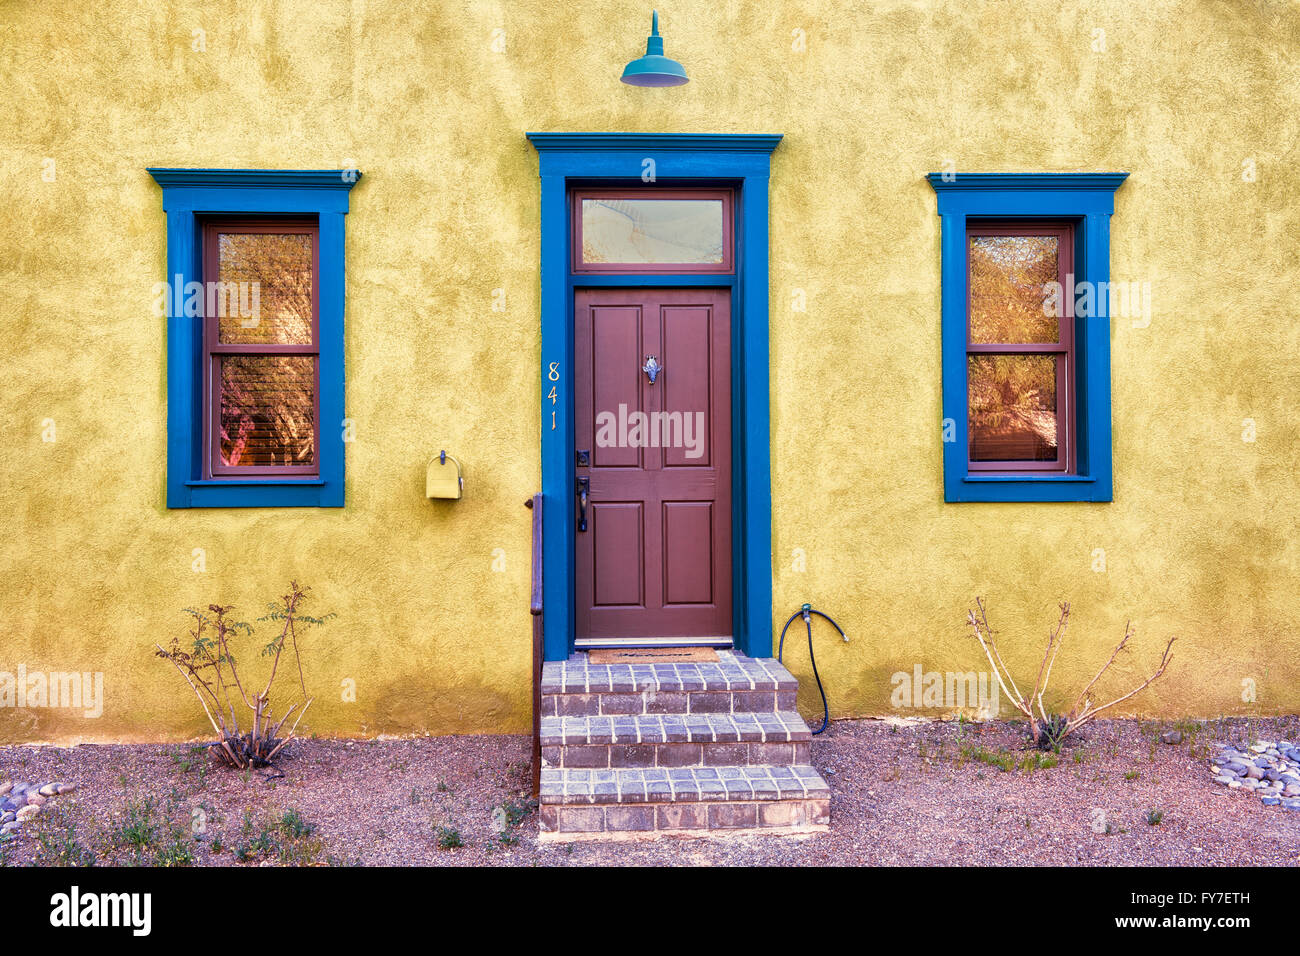 Colorata architettura inclusi portali e case di adobe trucco molto del Barrio storico distretto di Tucson, Arizona. Foto Stock